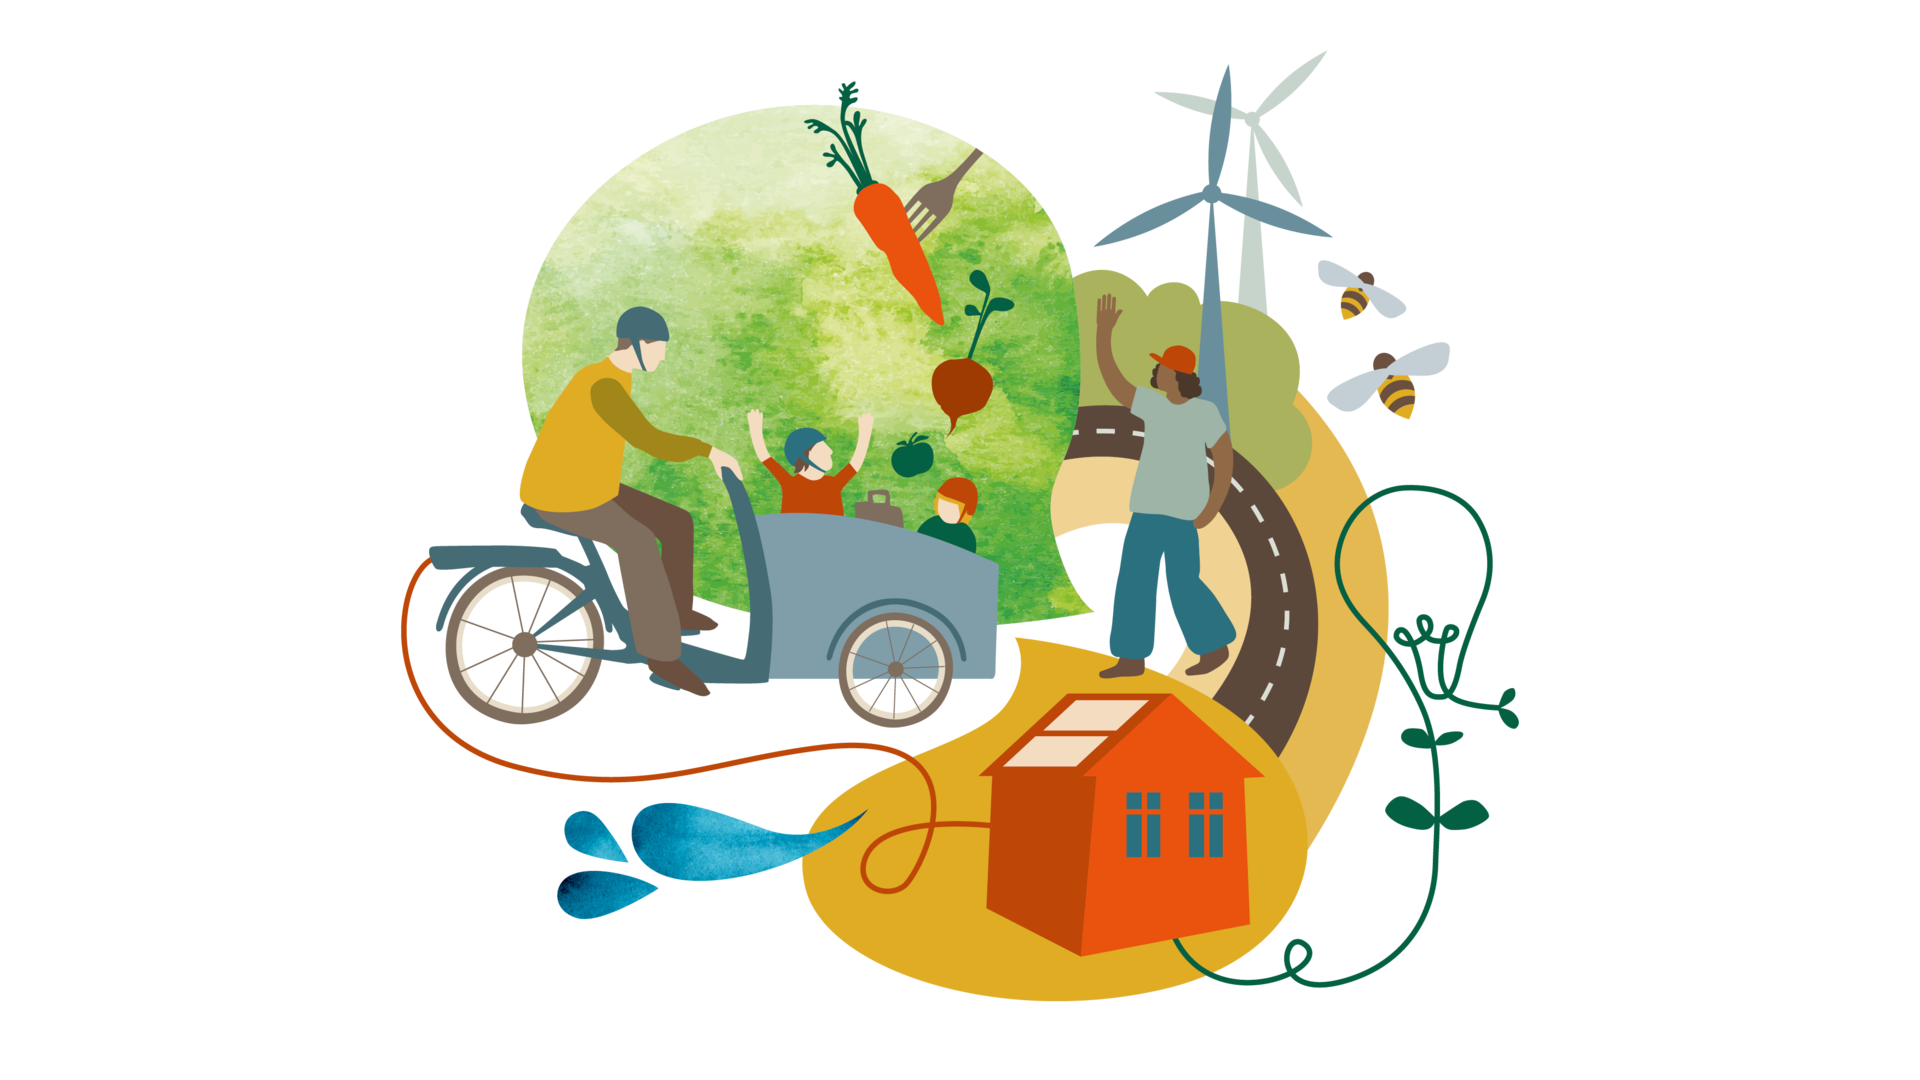 Illustration för utvecklingsområdet "Hållbar livskvalitet" med bland annat cykel, hus med solceller, en glödlampa, glada människor och vindkraftverk.